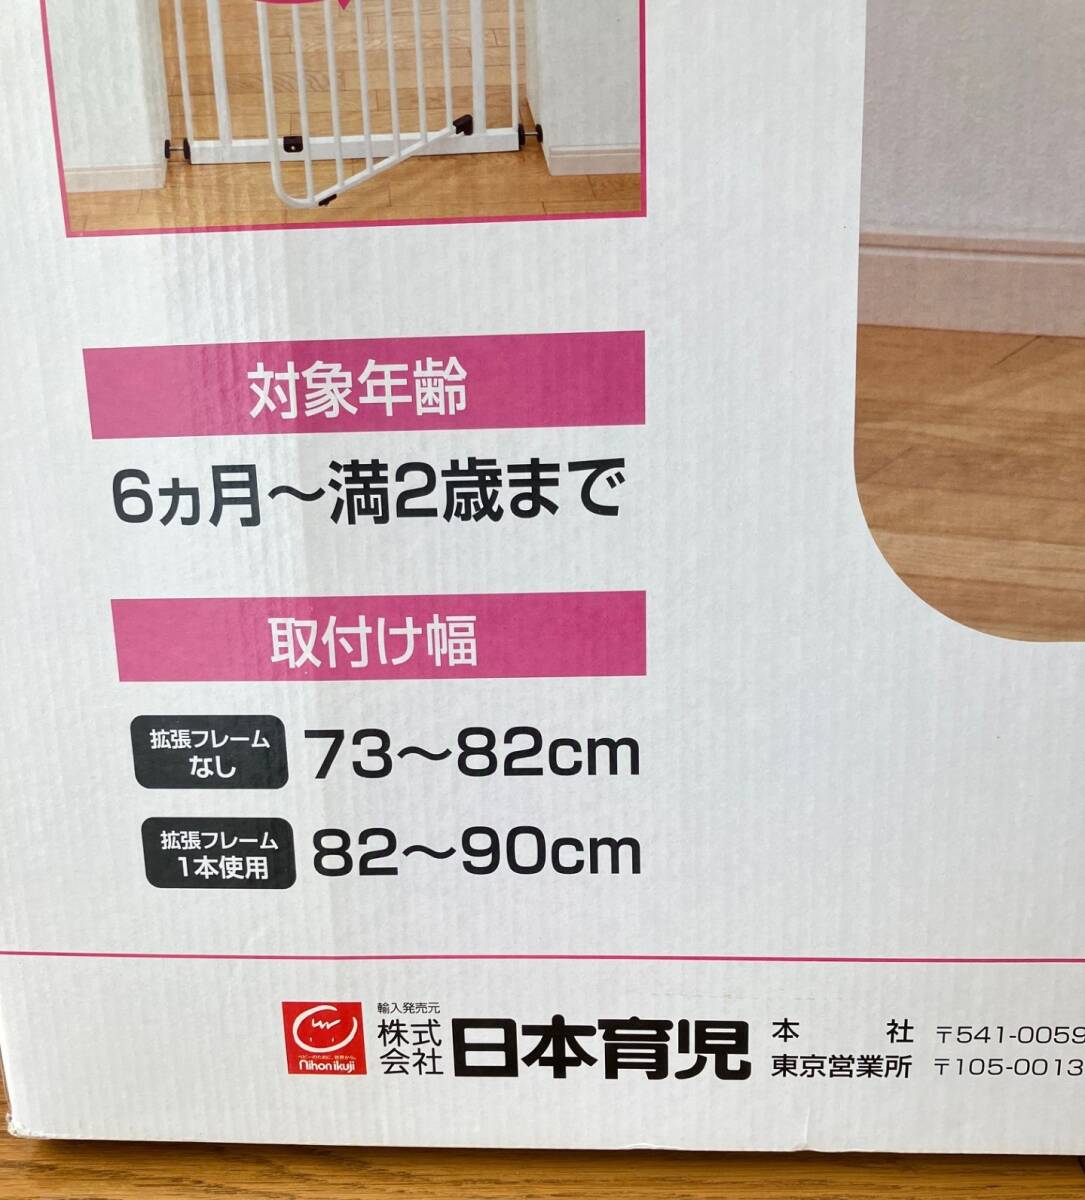 日本育児 ベビーズゲート Baby's Gate 拡張フレーム1本つき 73-82cm/82-90cm 送料無料 ベビーフェンス ベビーゲート セーフティ